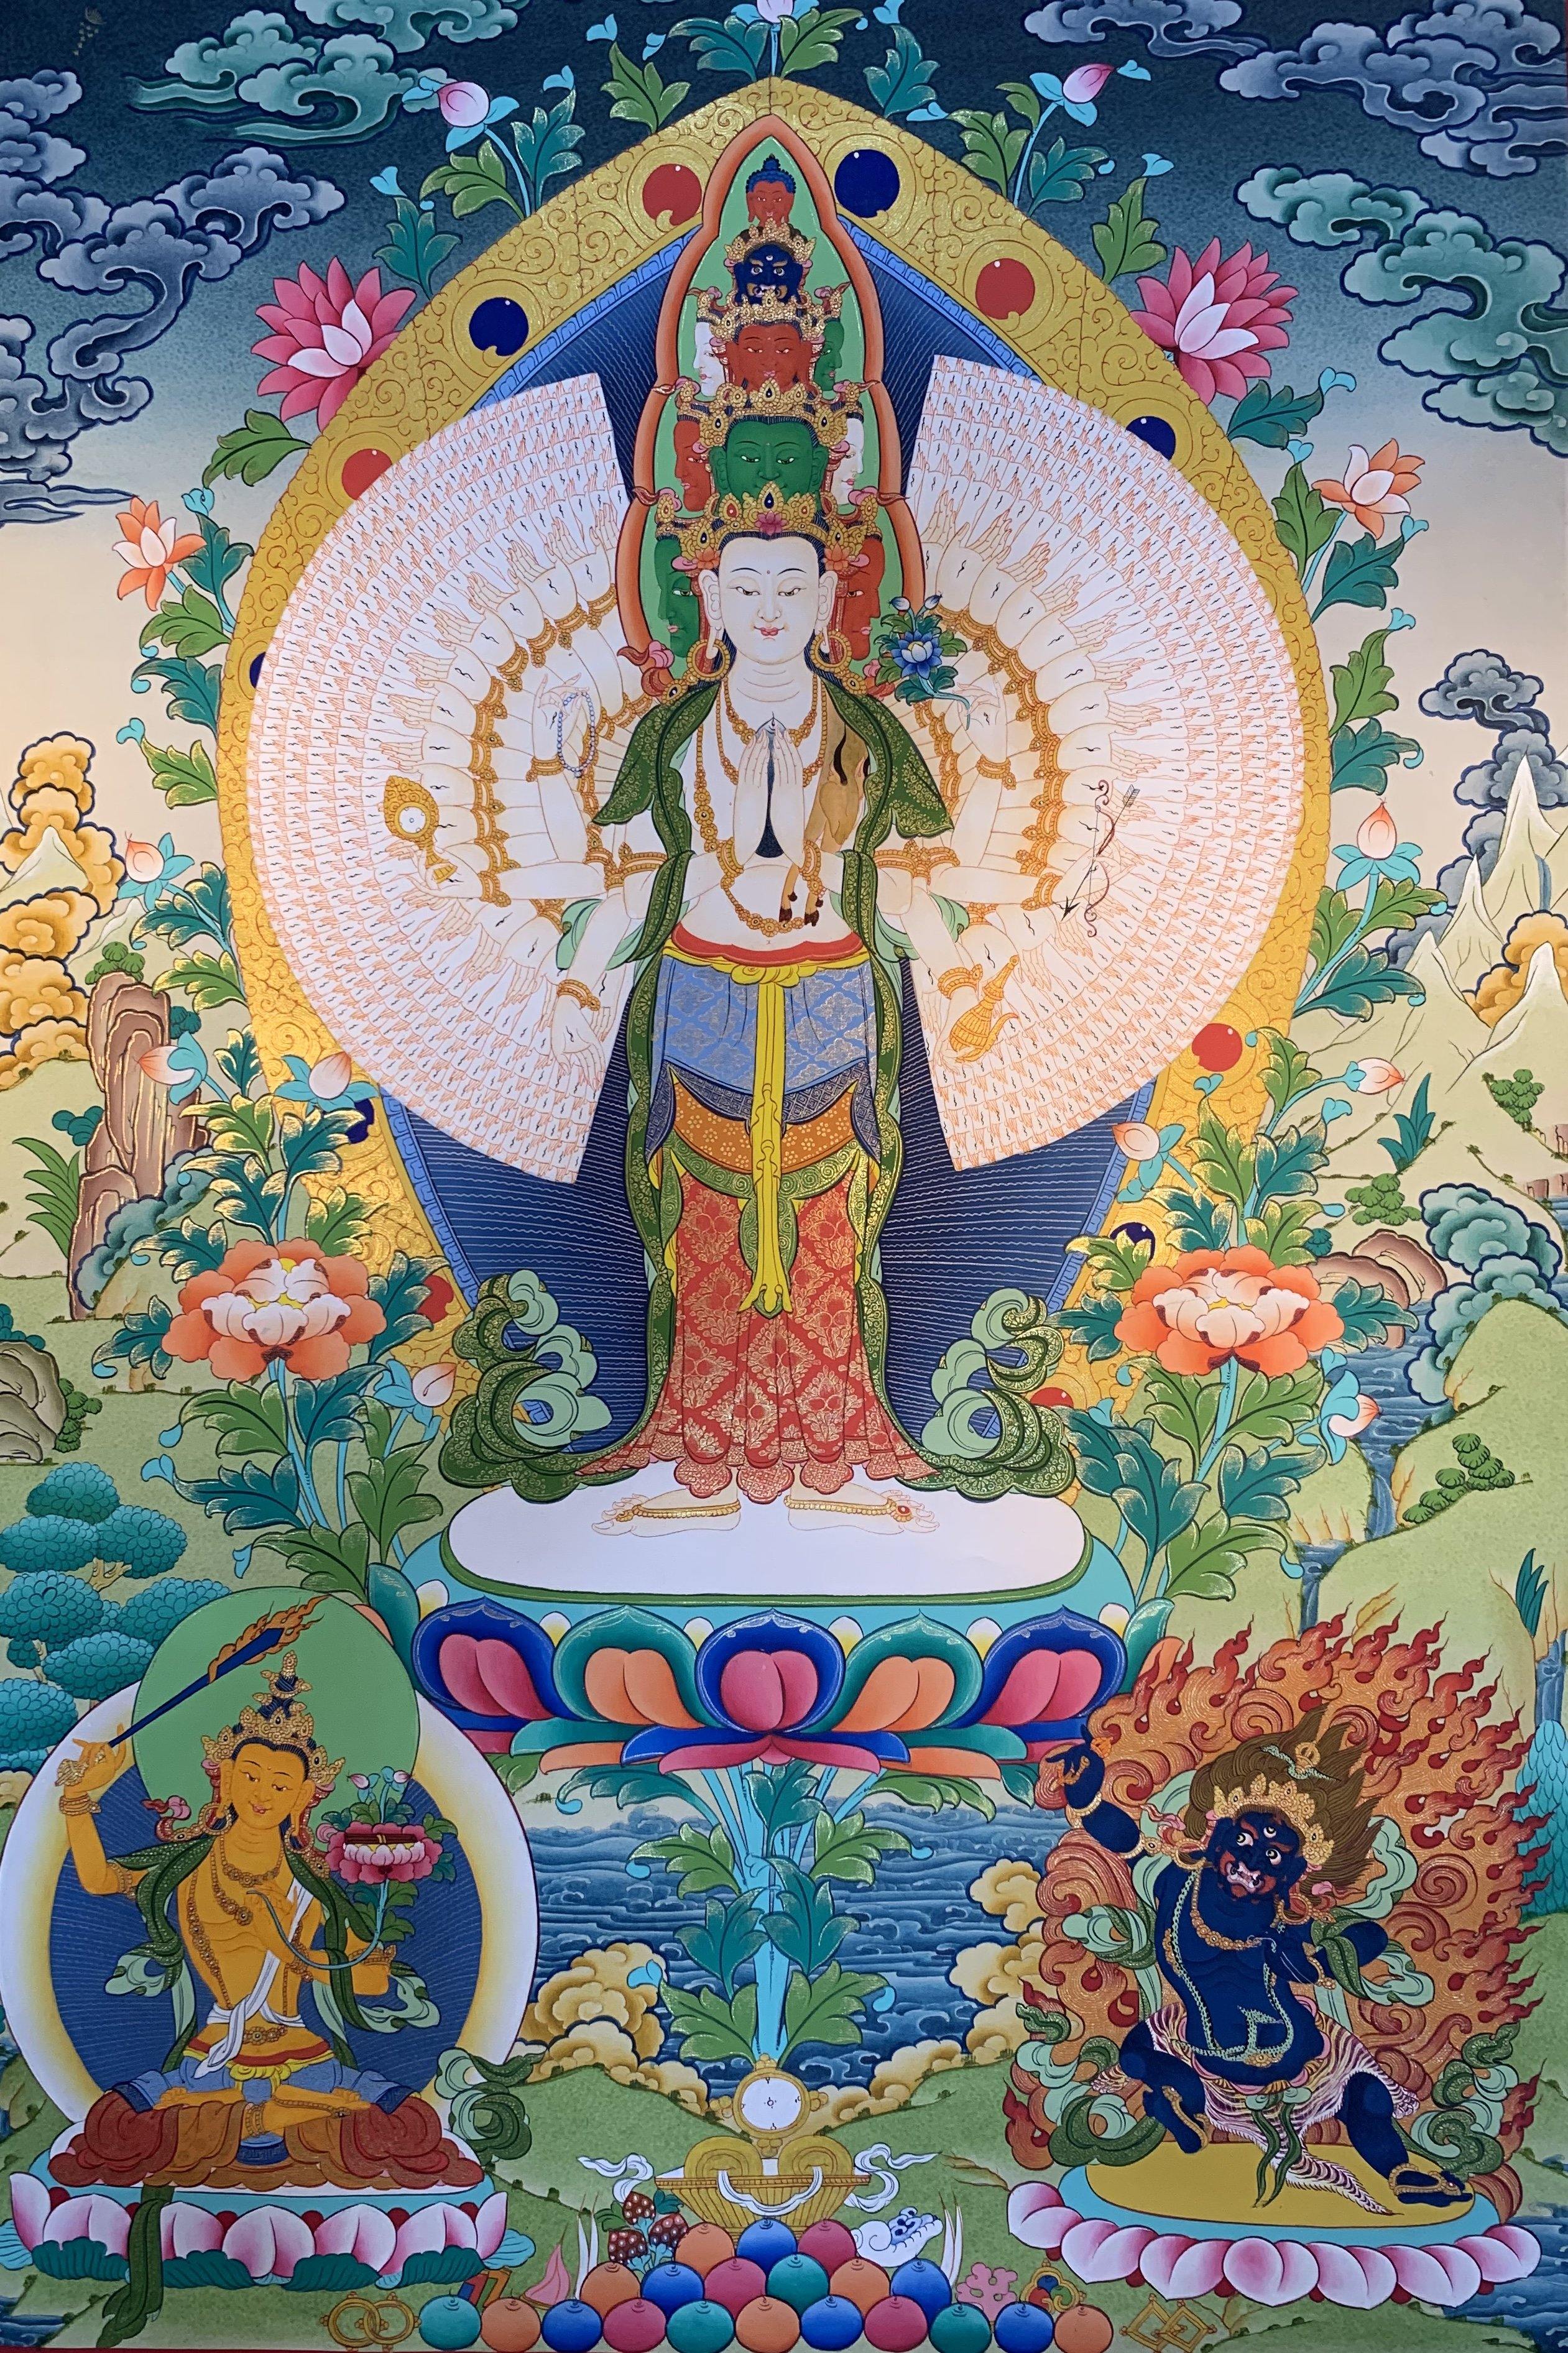 Avalokiteshvara Thangka Painting 70*50 - The Thangka